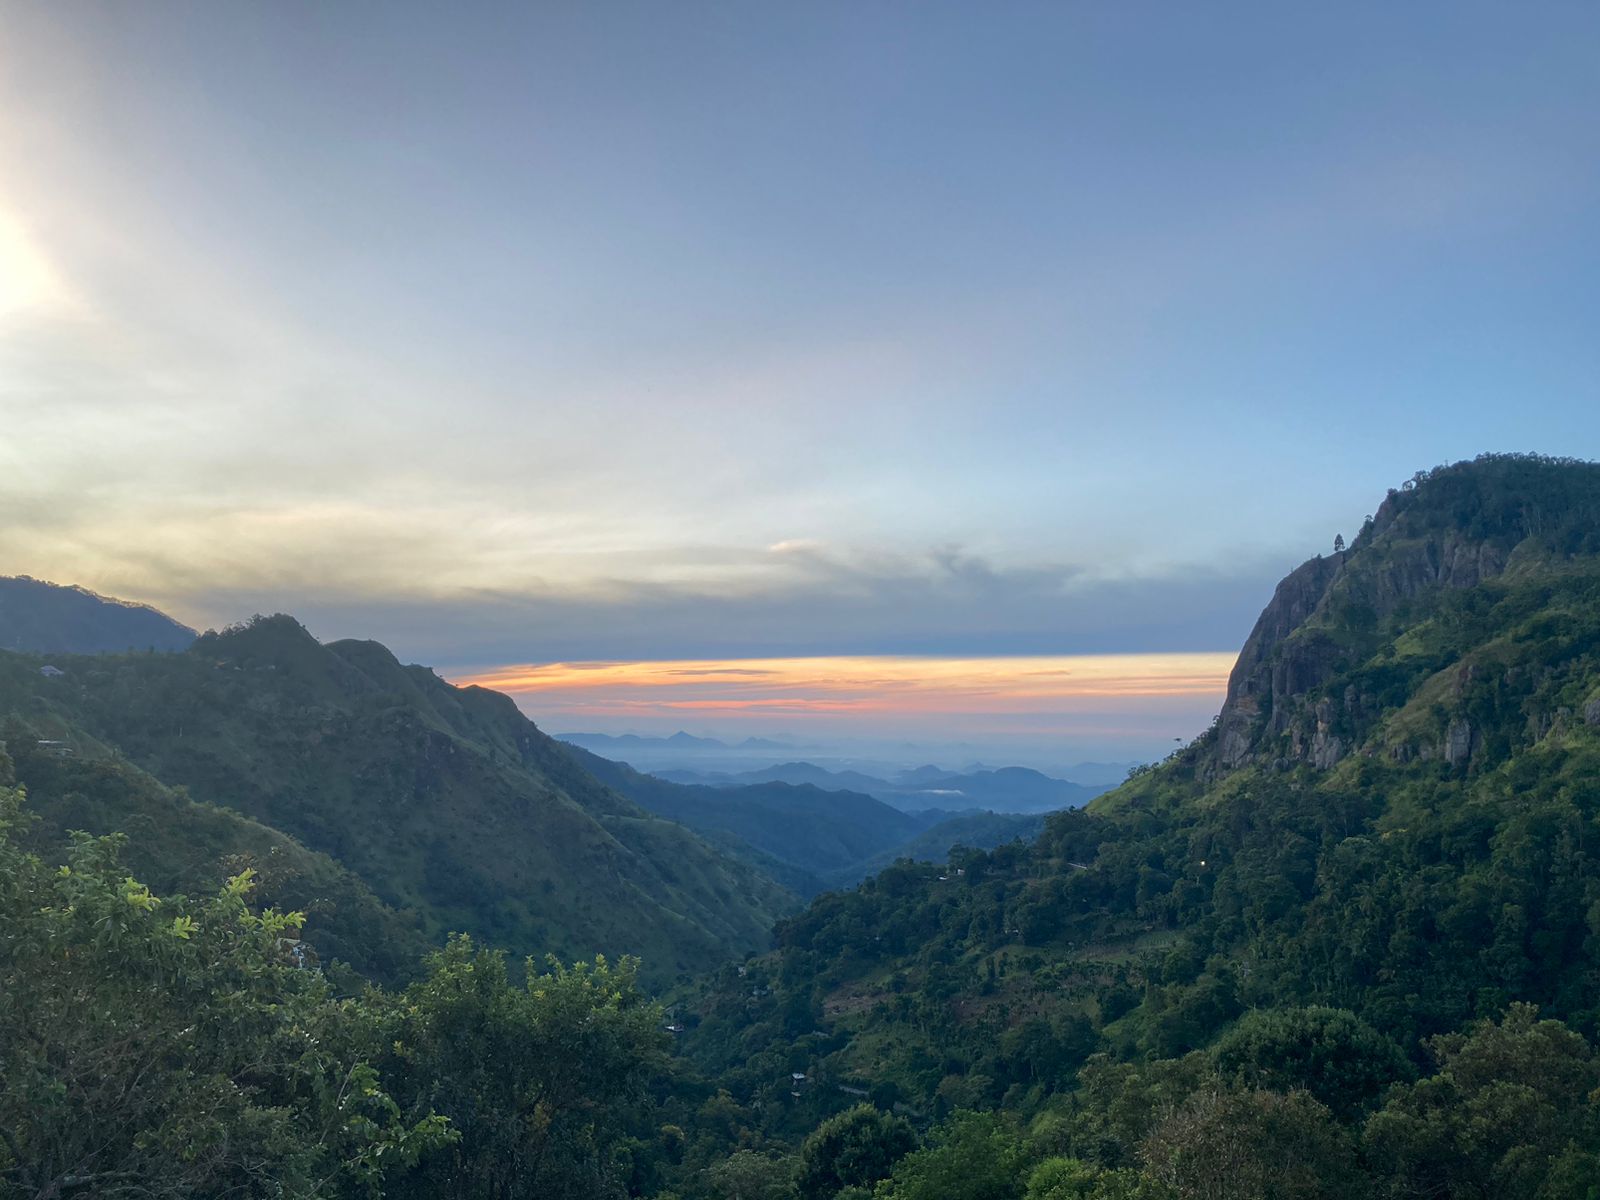 Ella, Sri Lanka, during dawn with a view of the Ella Gap